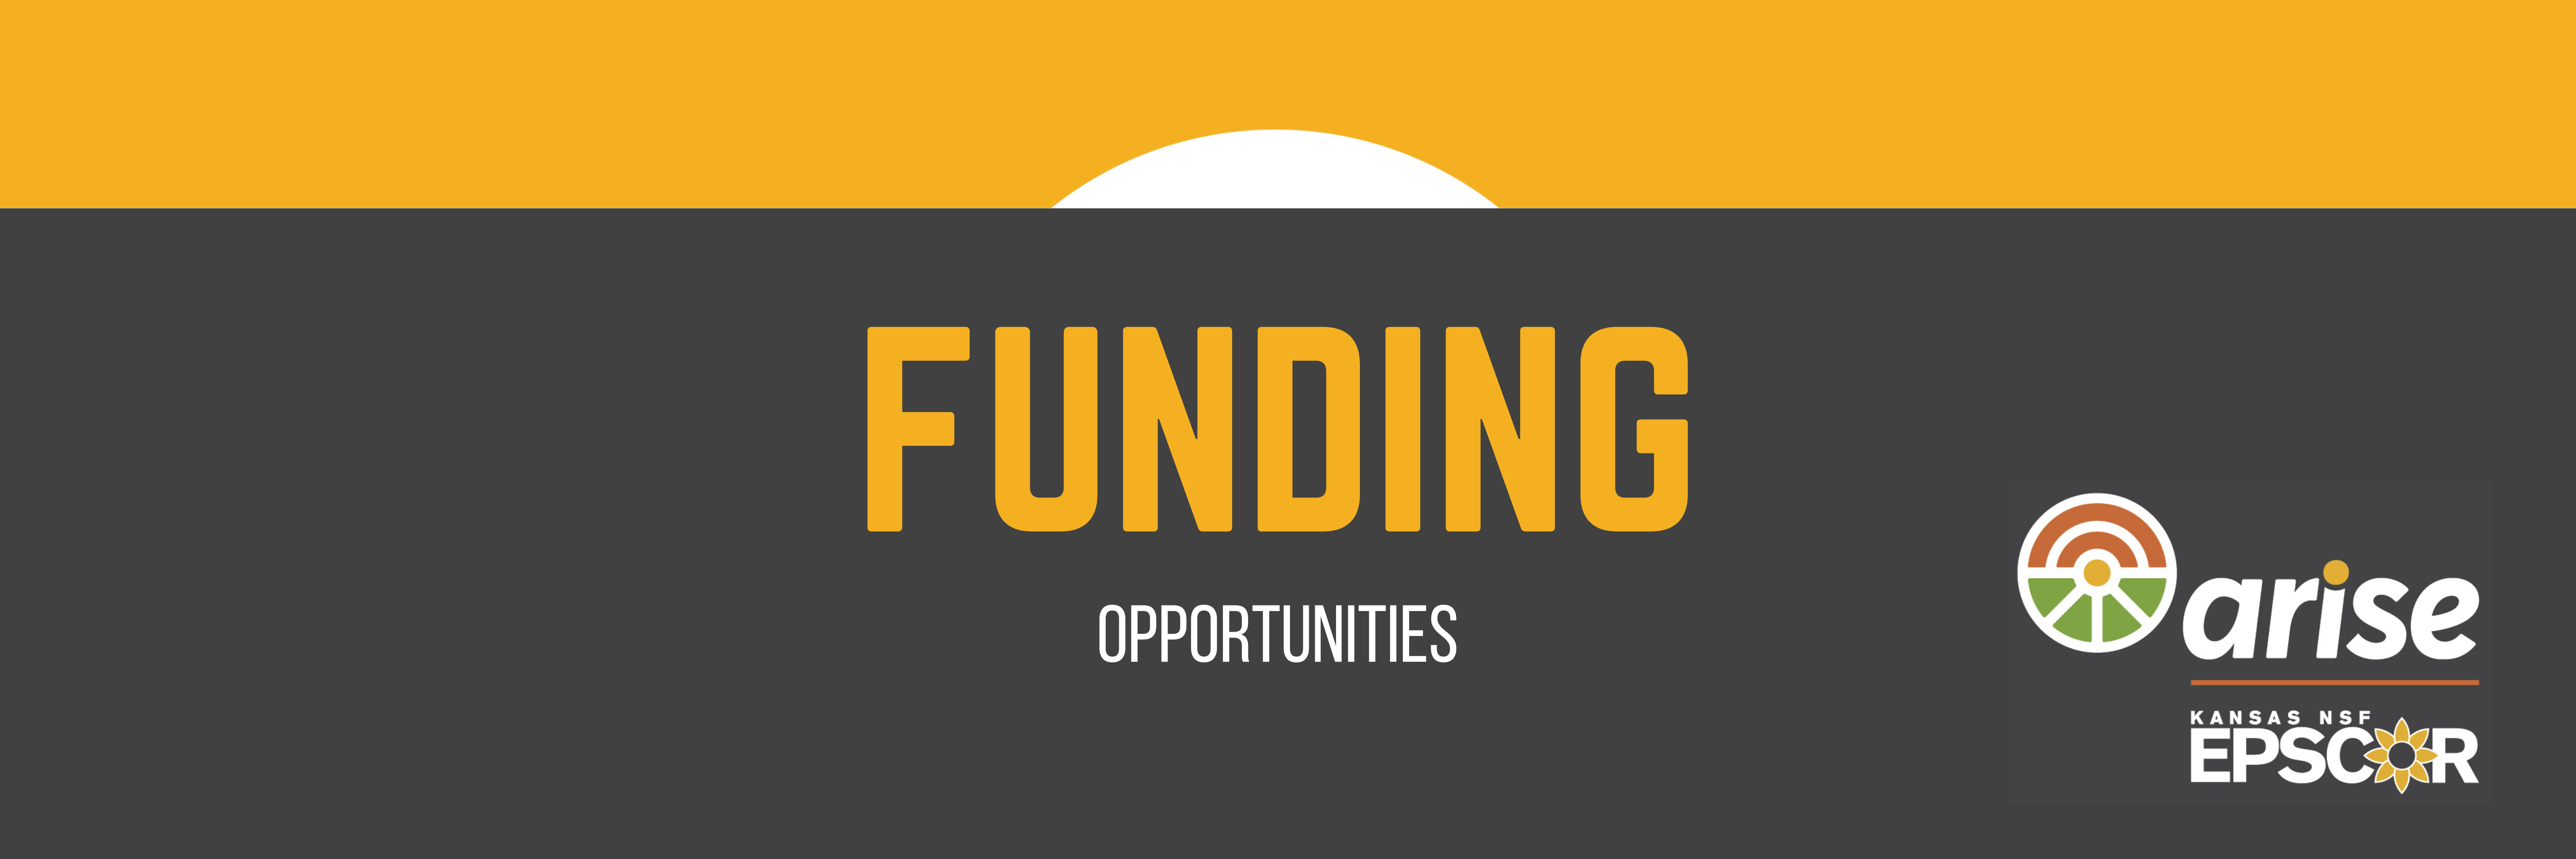 Funding opportunities